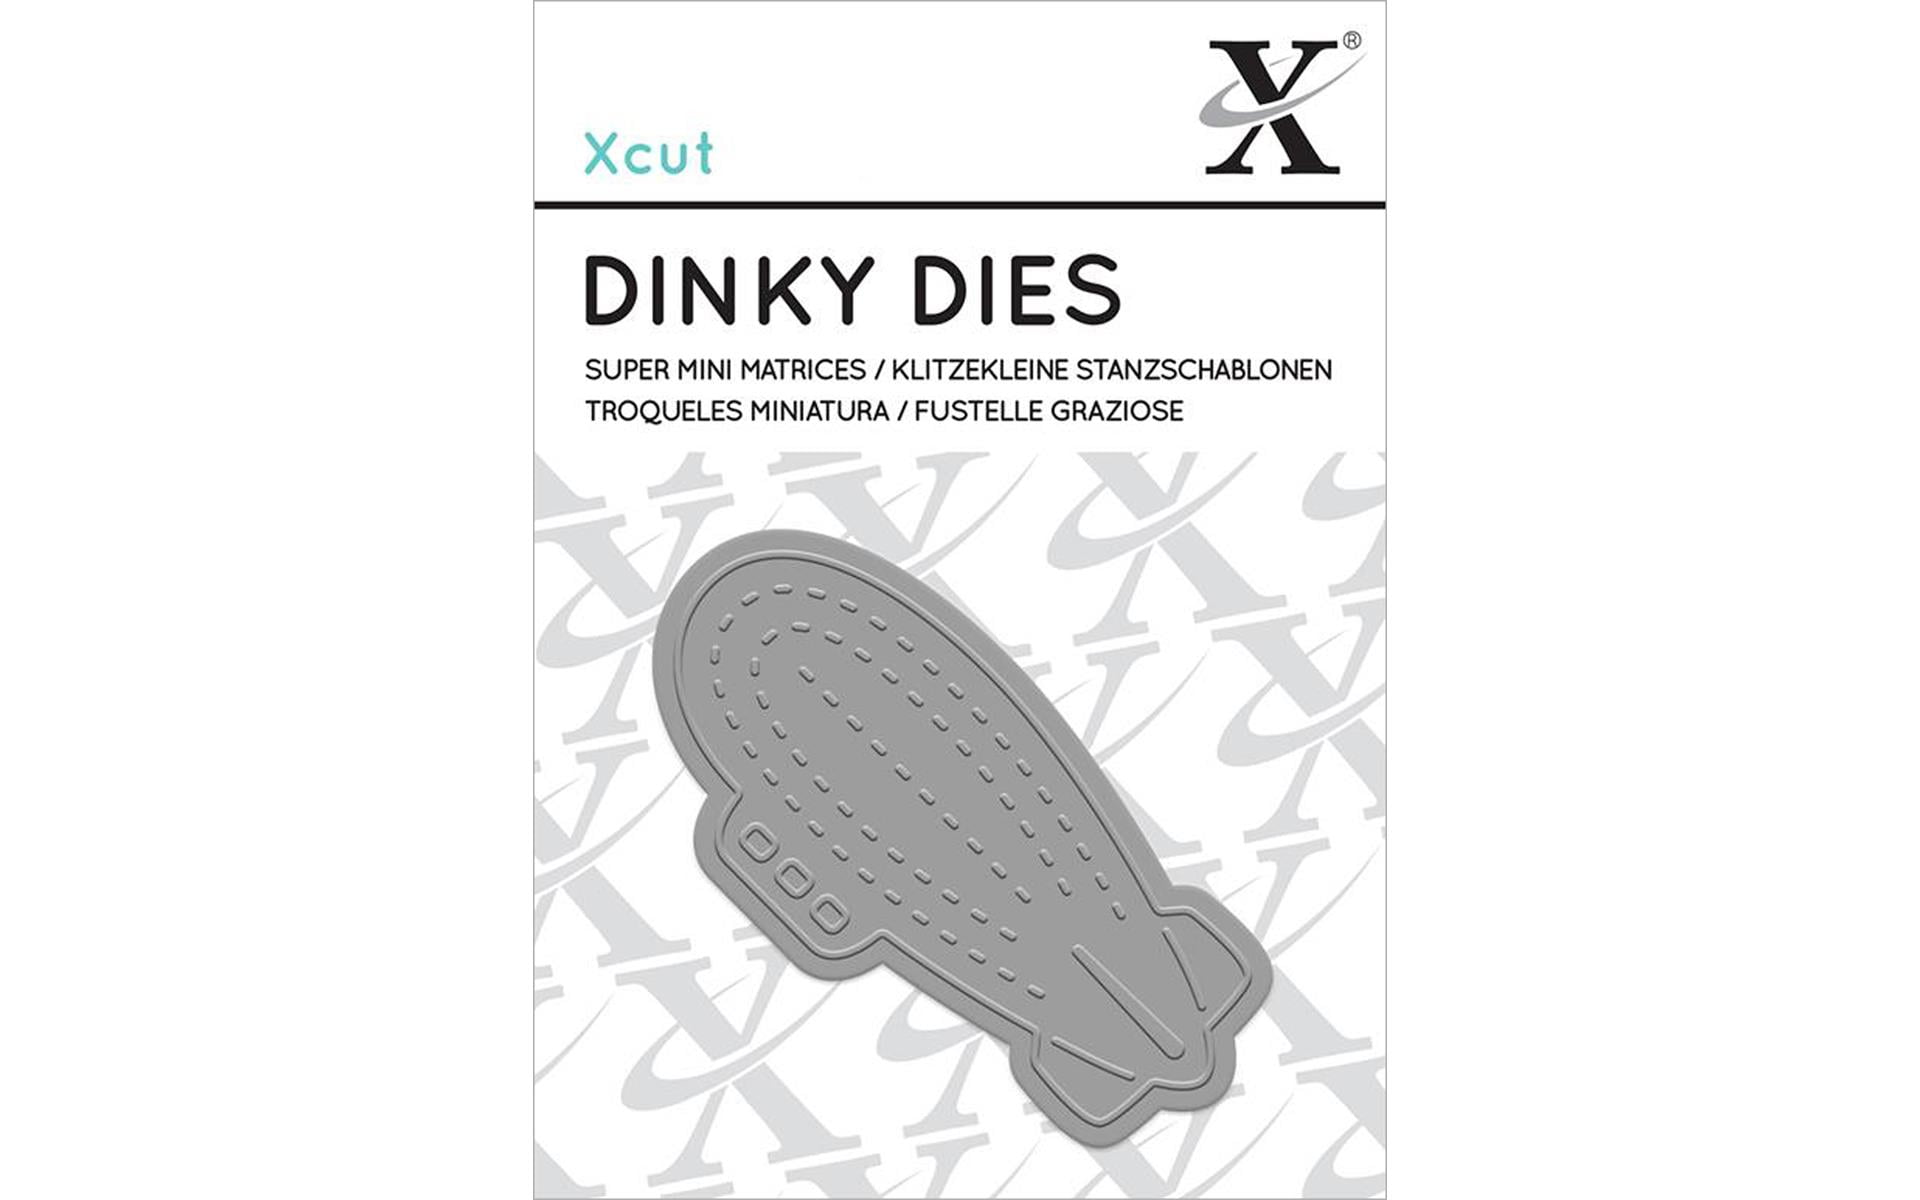 Xcut Dinky Die-Zeppelin pour Cartes et Artisanat